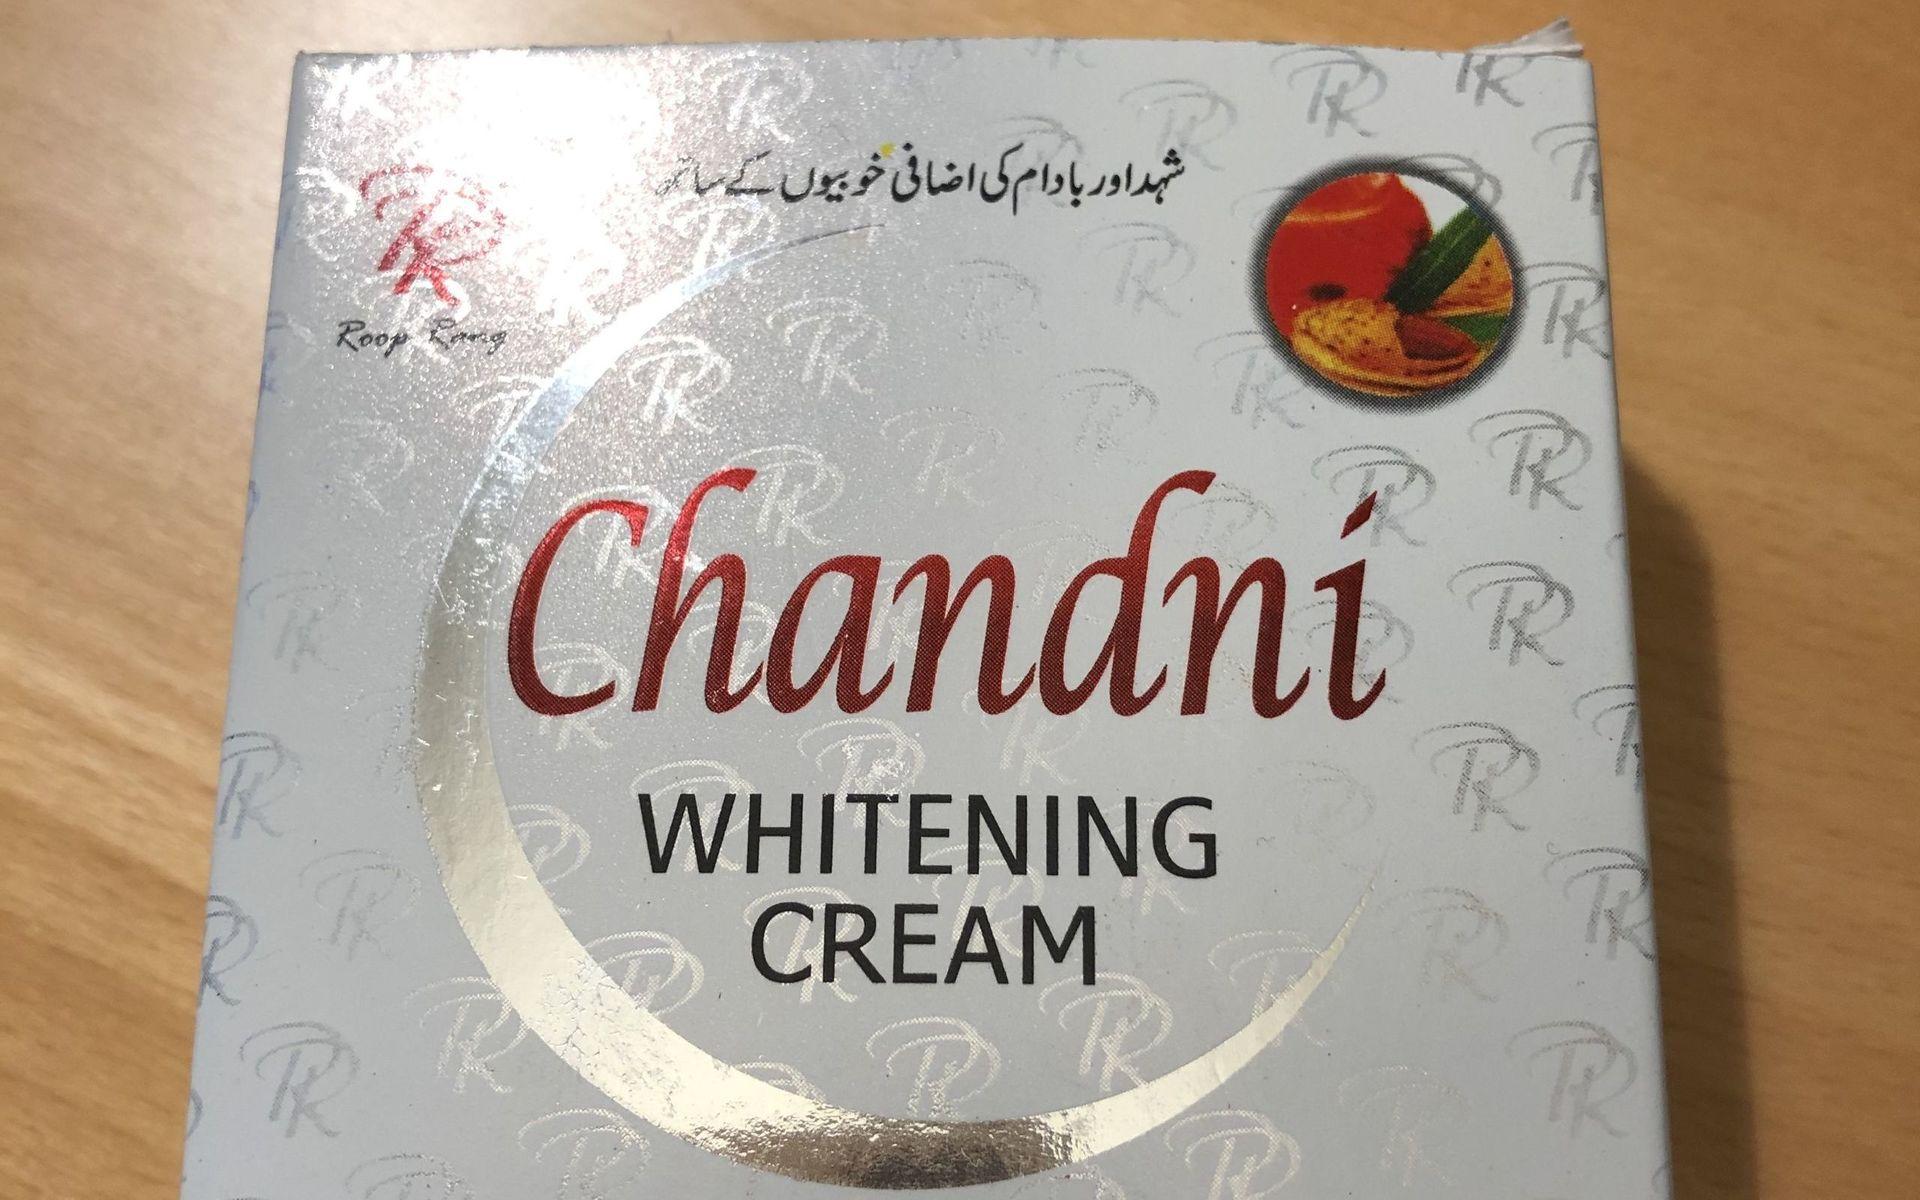 Chandni whitening cream. 